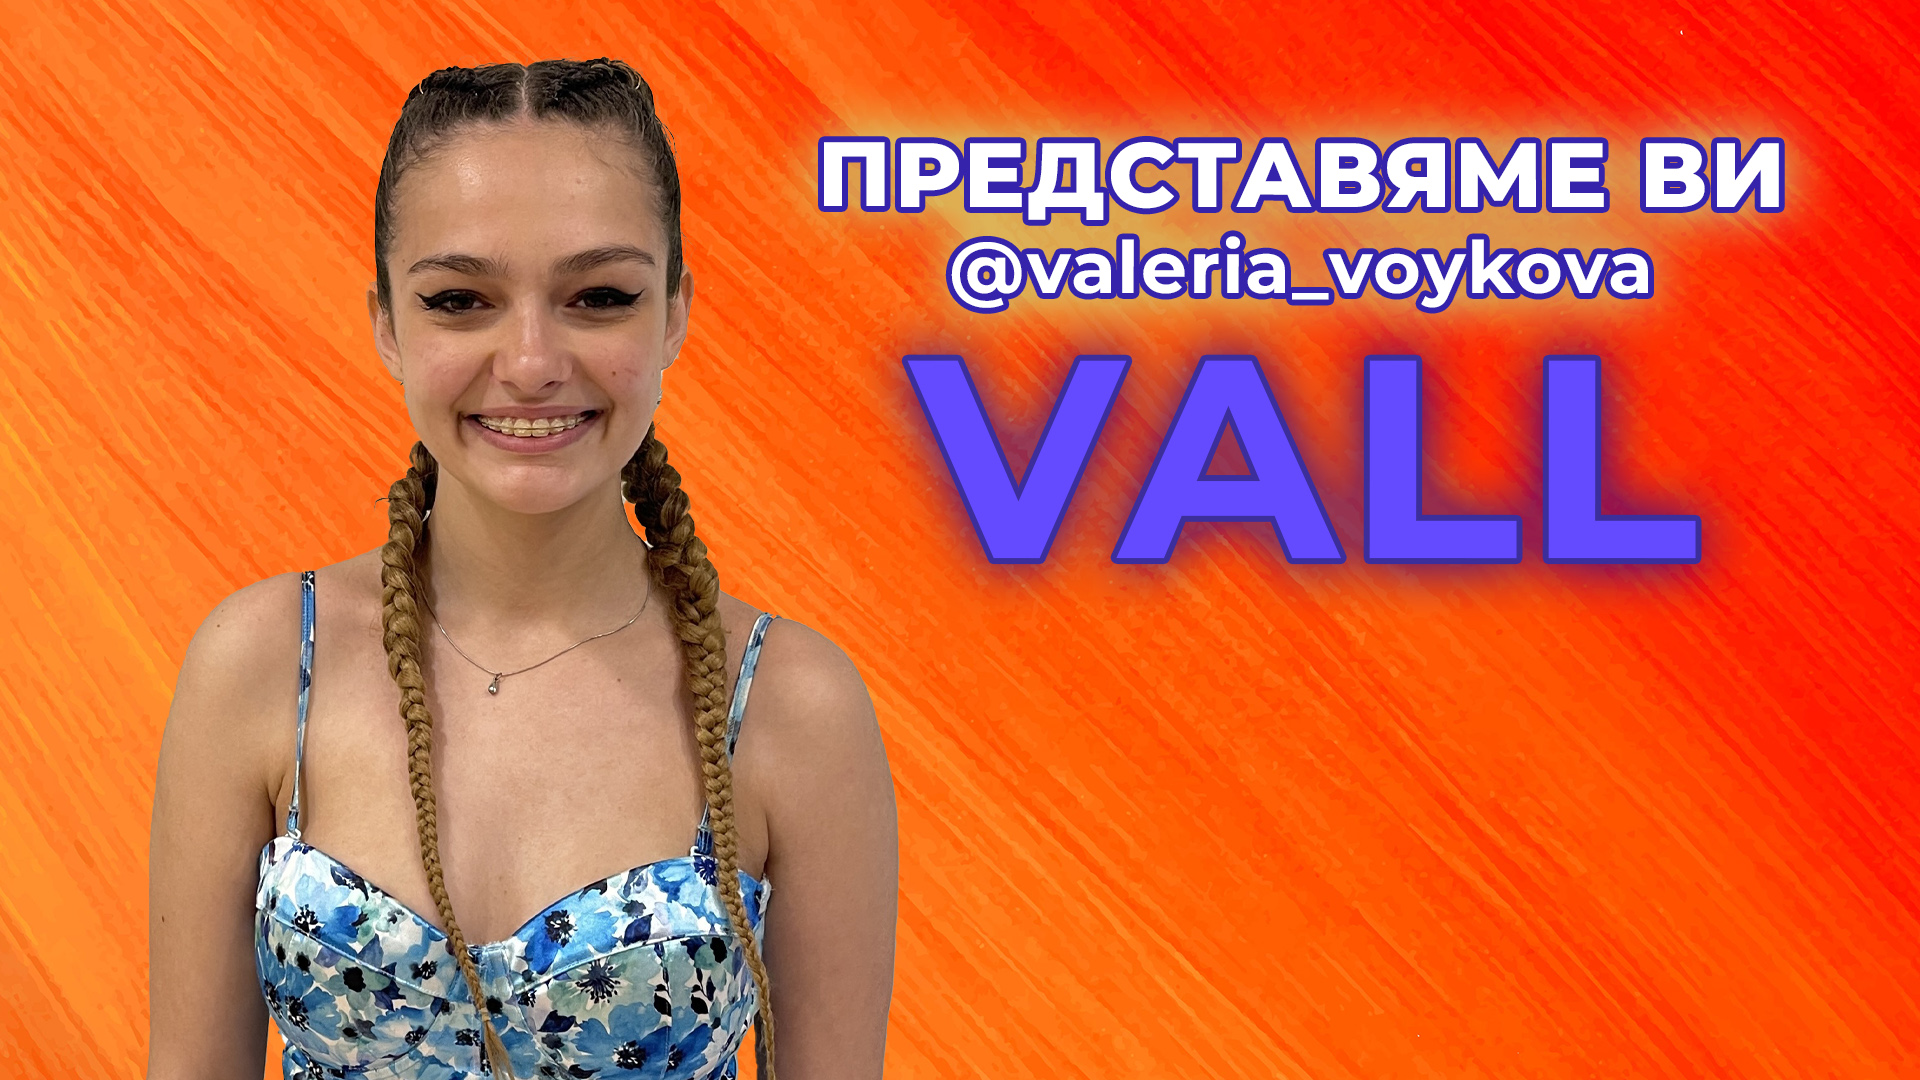 VALL- момичето, което ще прослави България в чужбина с гласа си🤩